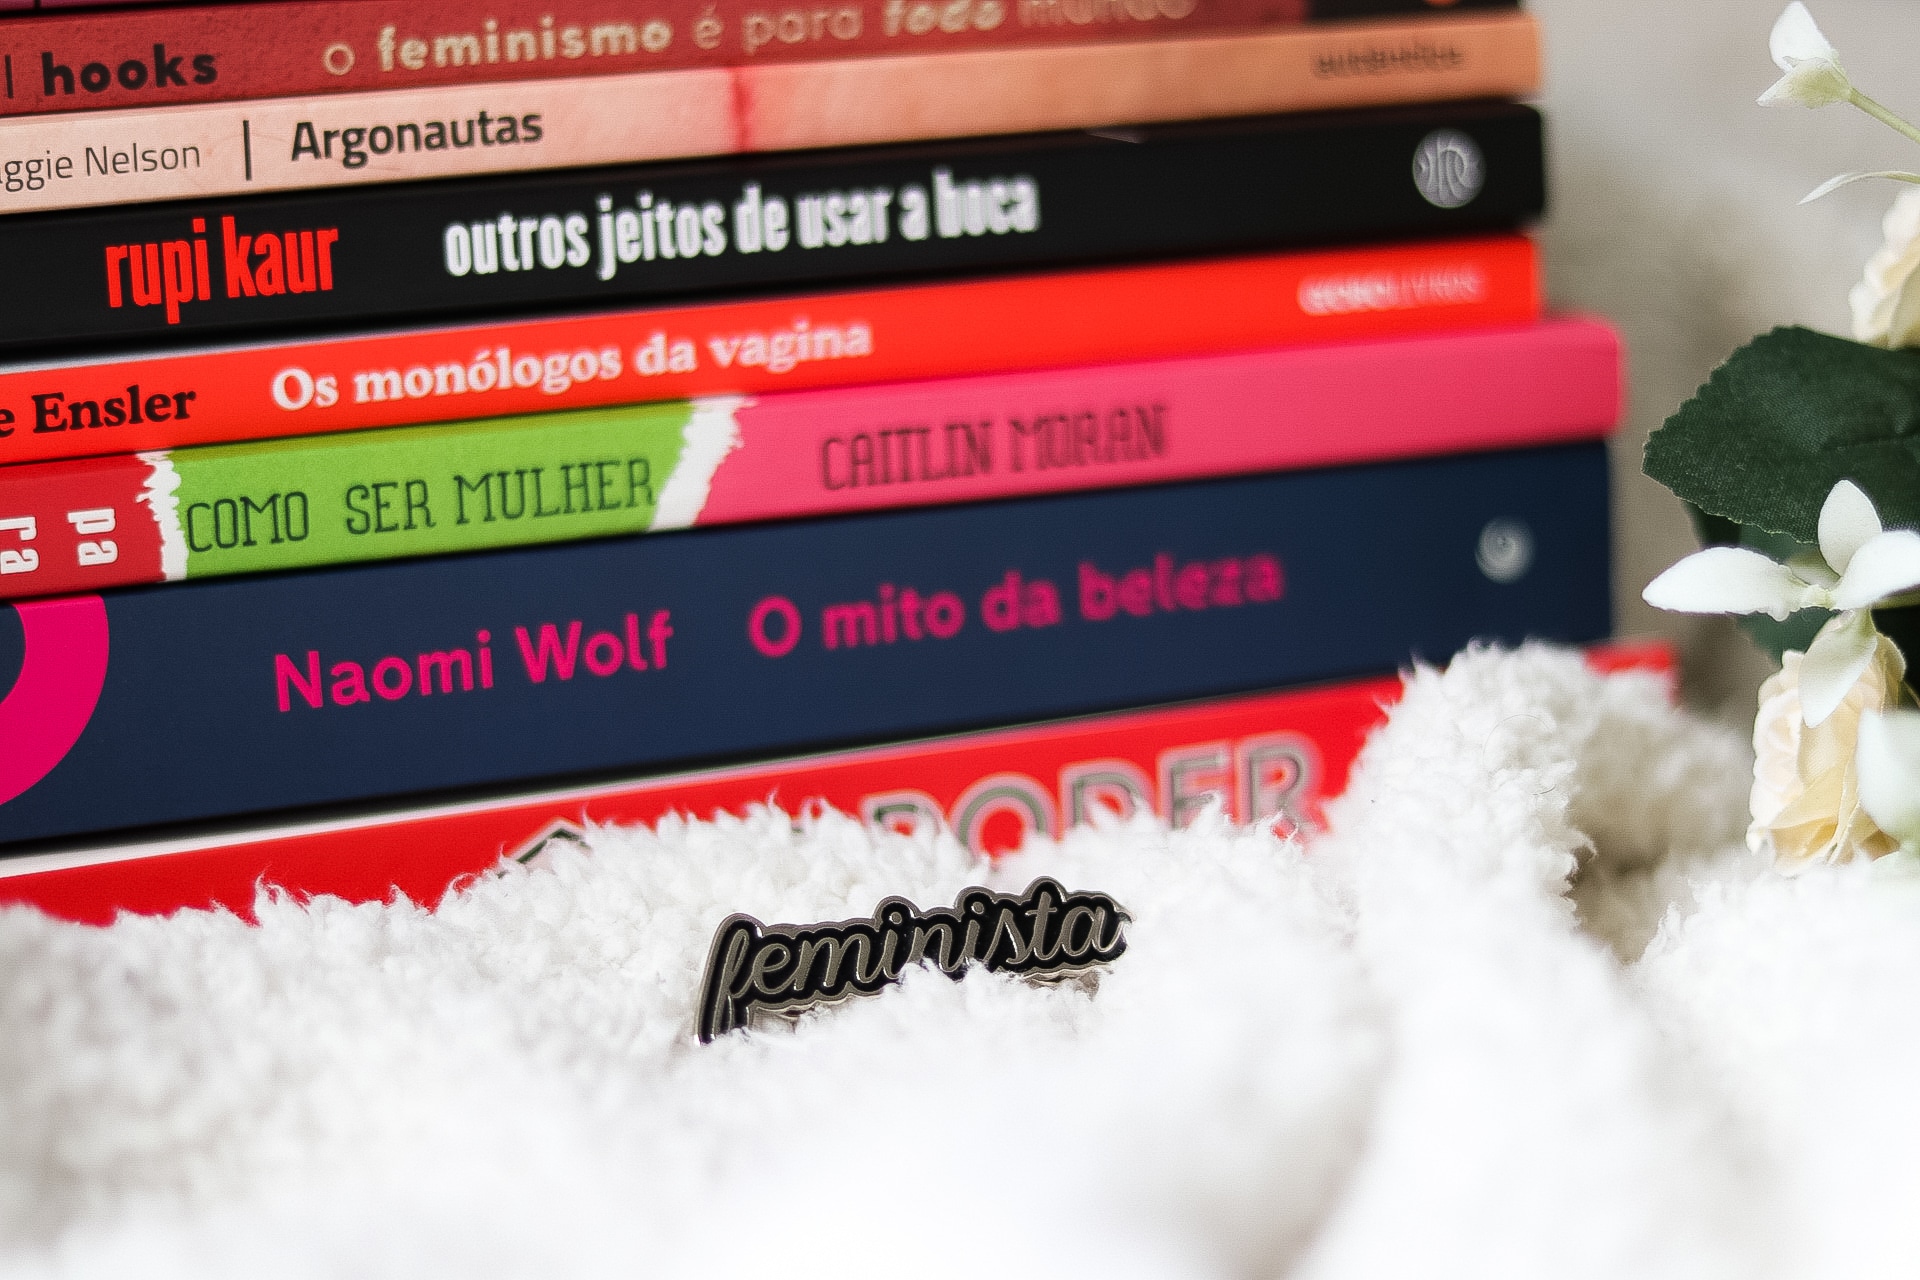 Pequena biblioteca feminista